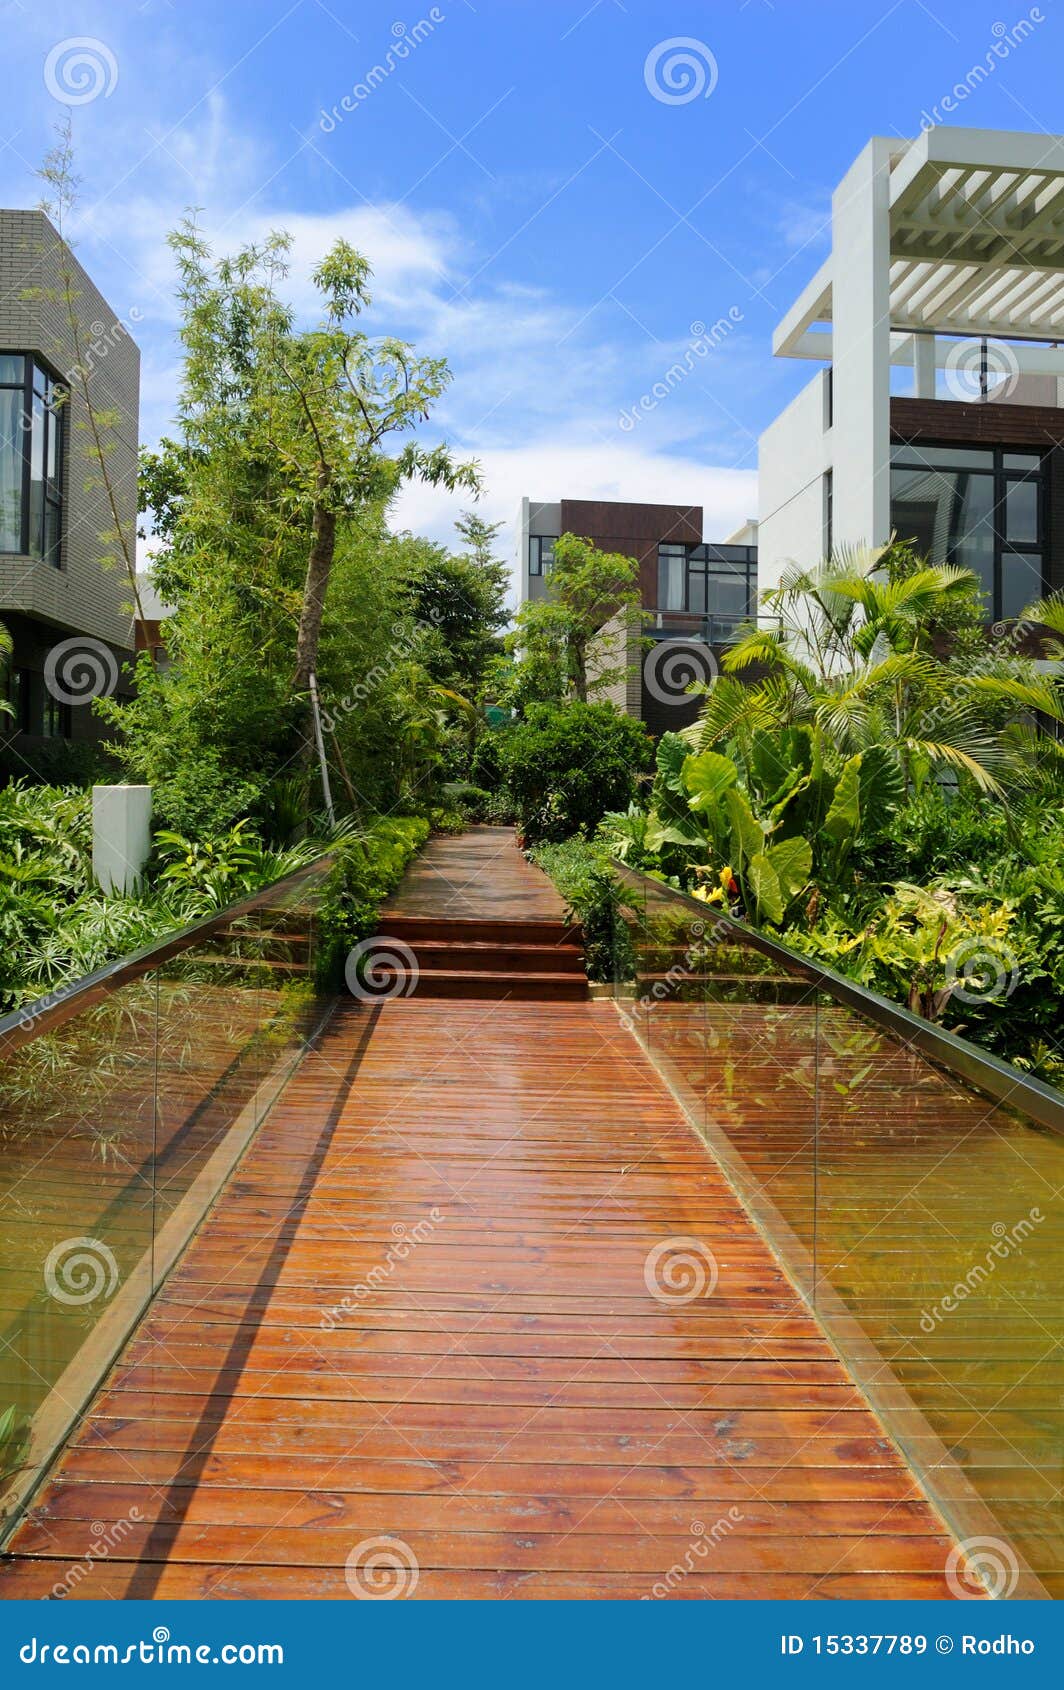 wooden footpath through a tranquil garden